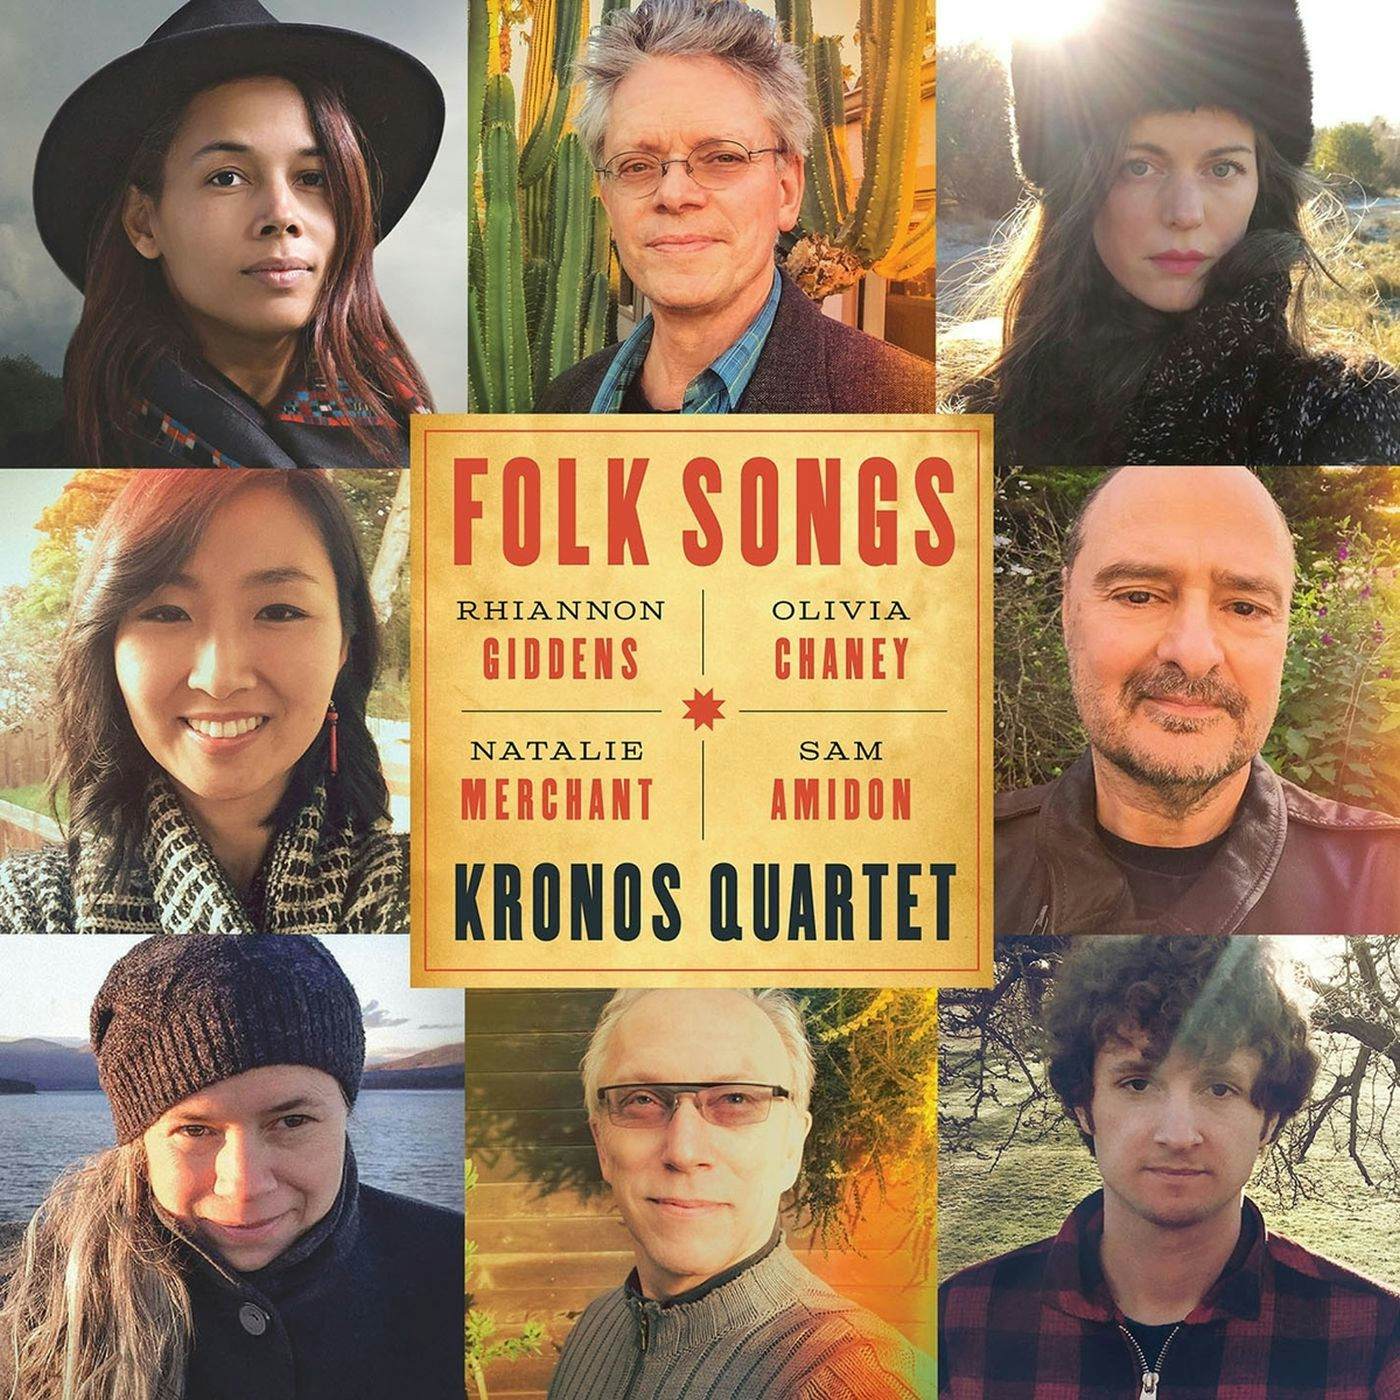 Kronos Quartet Folk Songs Vinyl Record